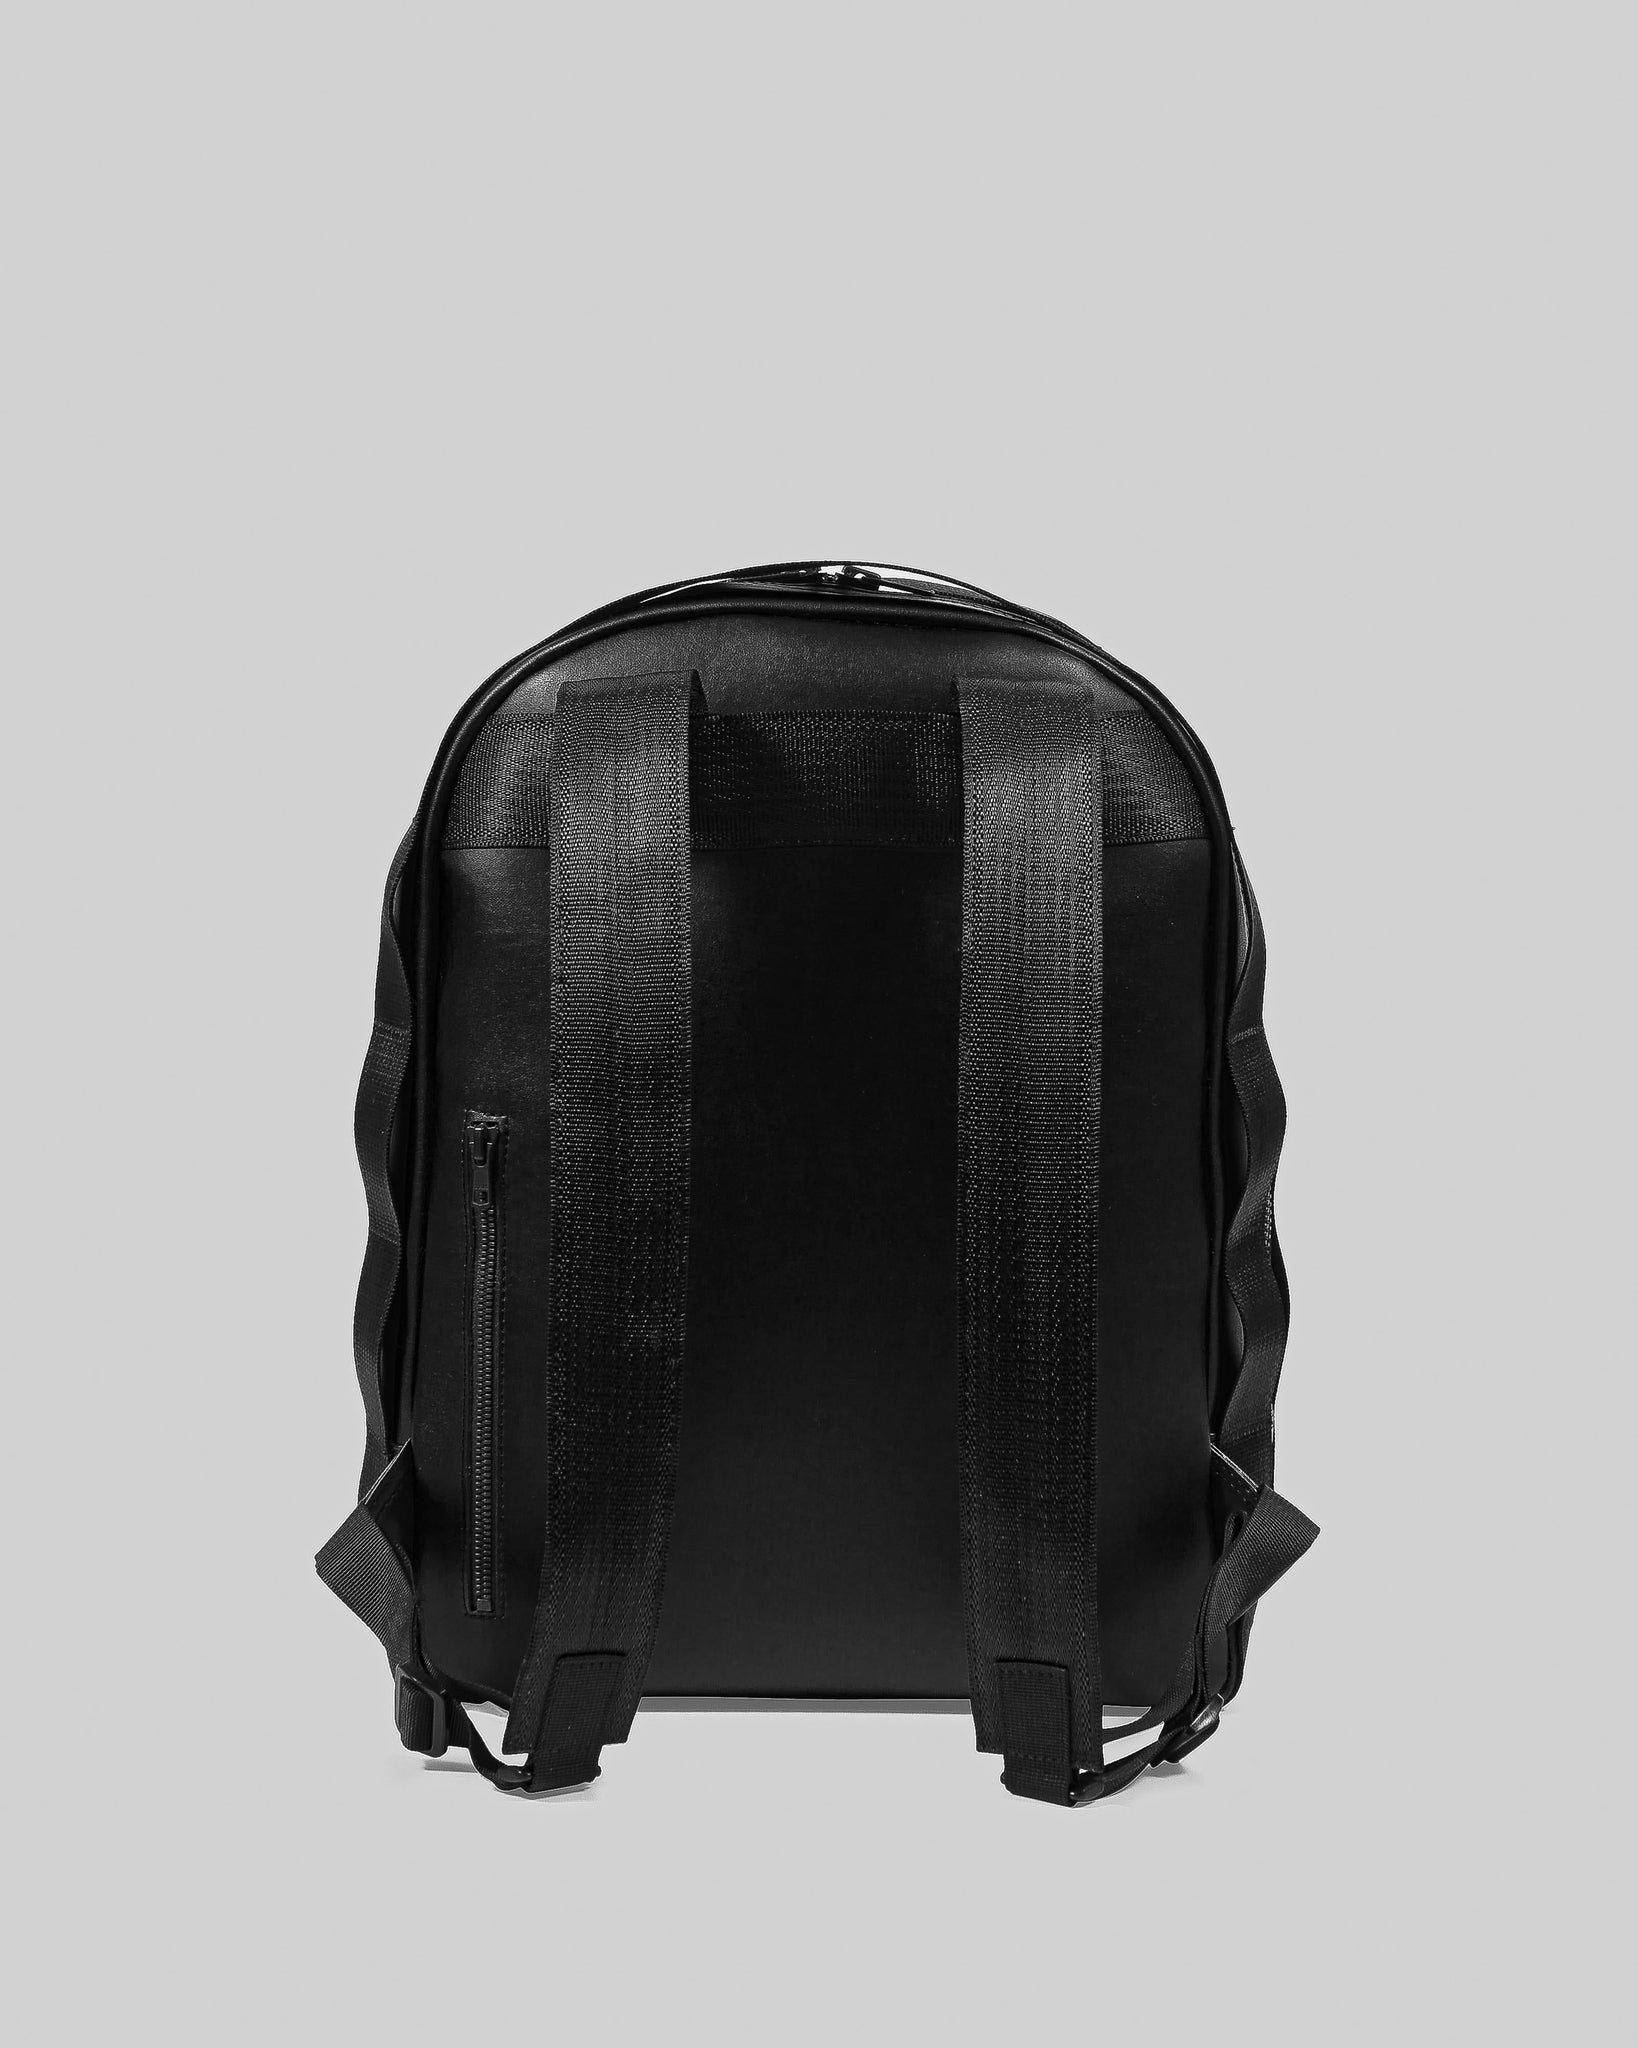 DIETER Backpack in Desserto® - 457 ANEW | Atelier IV V VII Inc.